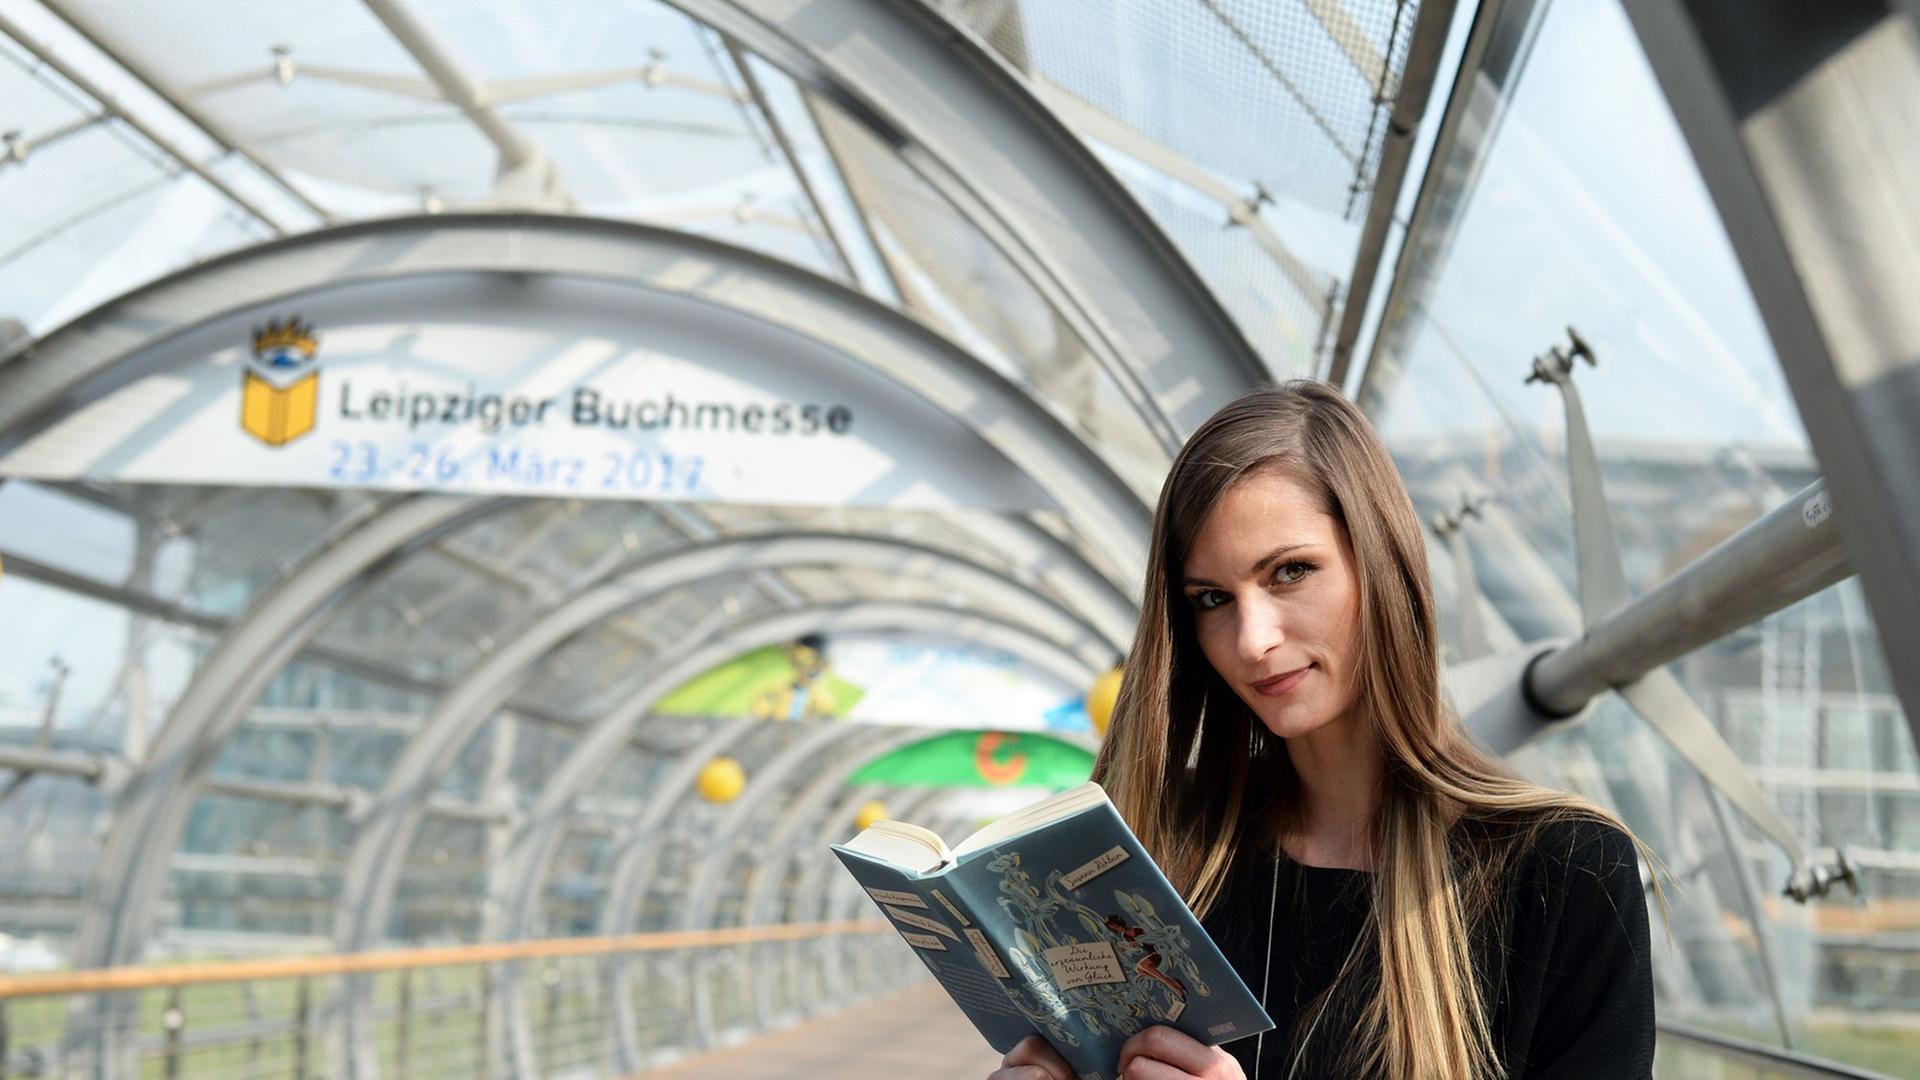 Auf der Leipziger Buchmesse 2016: Ein Frau liest